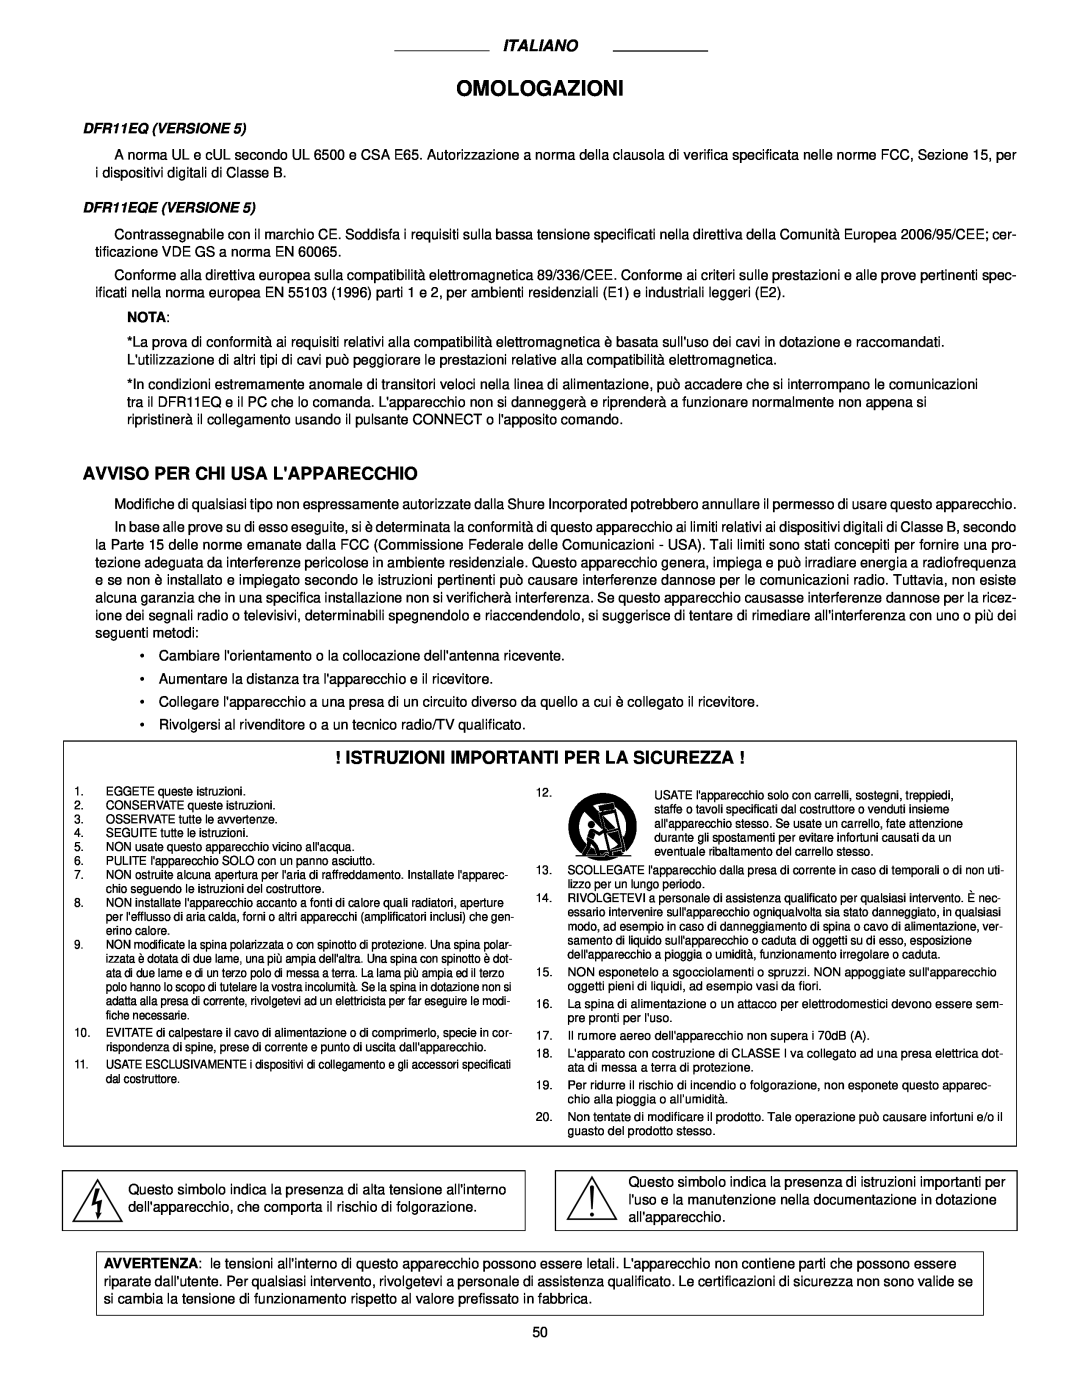 Shure DFR11EQ VERSION 5 manual Omologazioni, Avviso Per Chi Usa Lapparecchio, Istruzioni Importanti Per La Sicurezza 